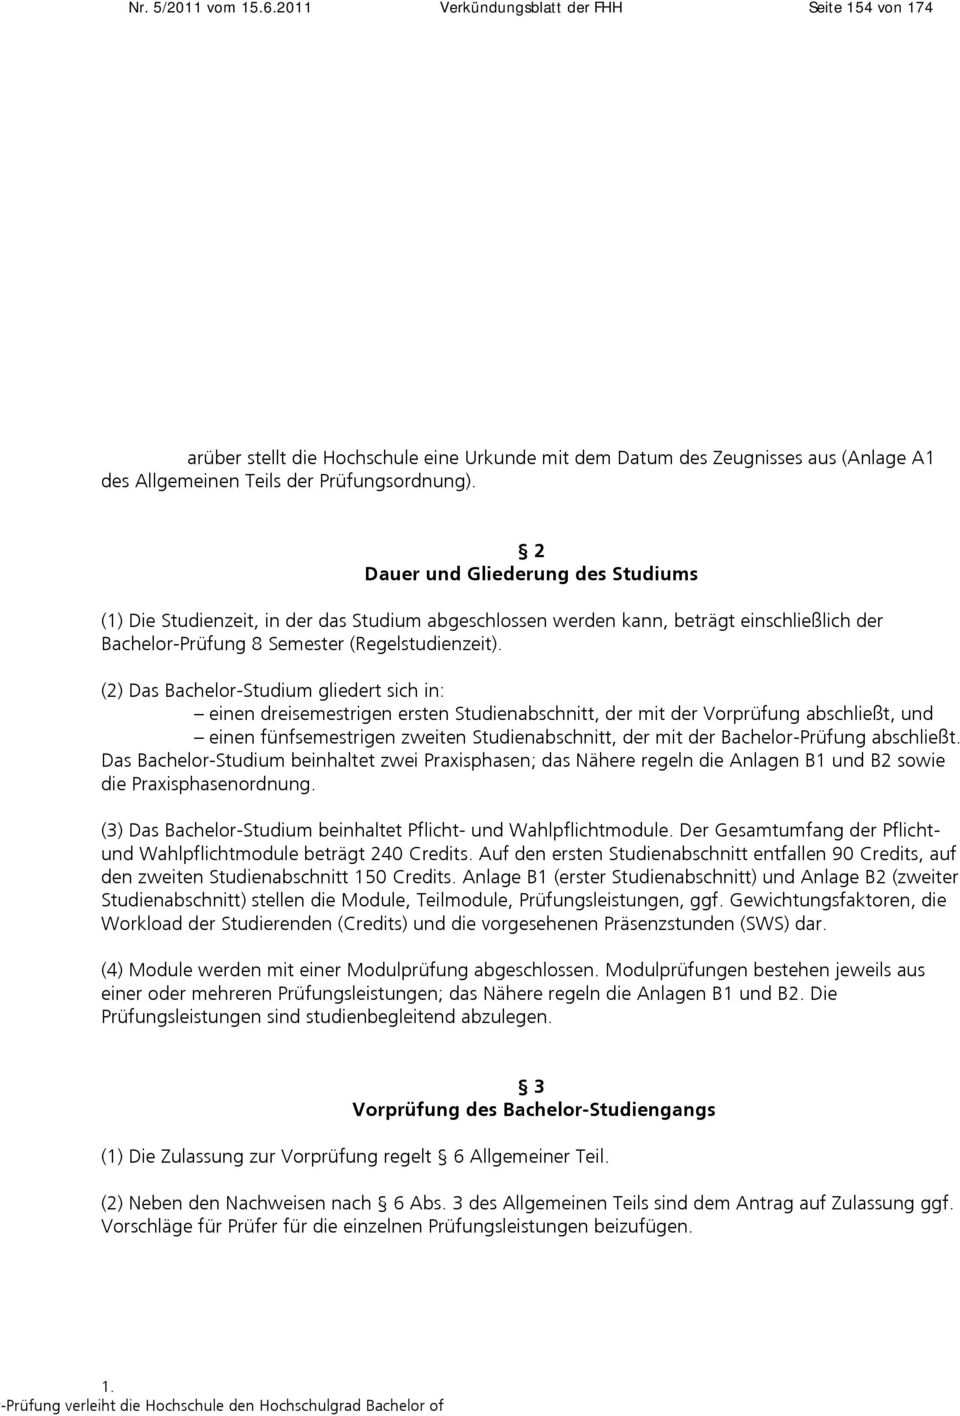 IV Wirtschaft und Informatik der Fachhochschule Hannover (FHH) Veröffentlicht im Verkündungsblatt Nr. 3/2009 vom 23.06.2009, in der Fassung der 1. Änderung Verkündungsblatt 2011.